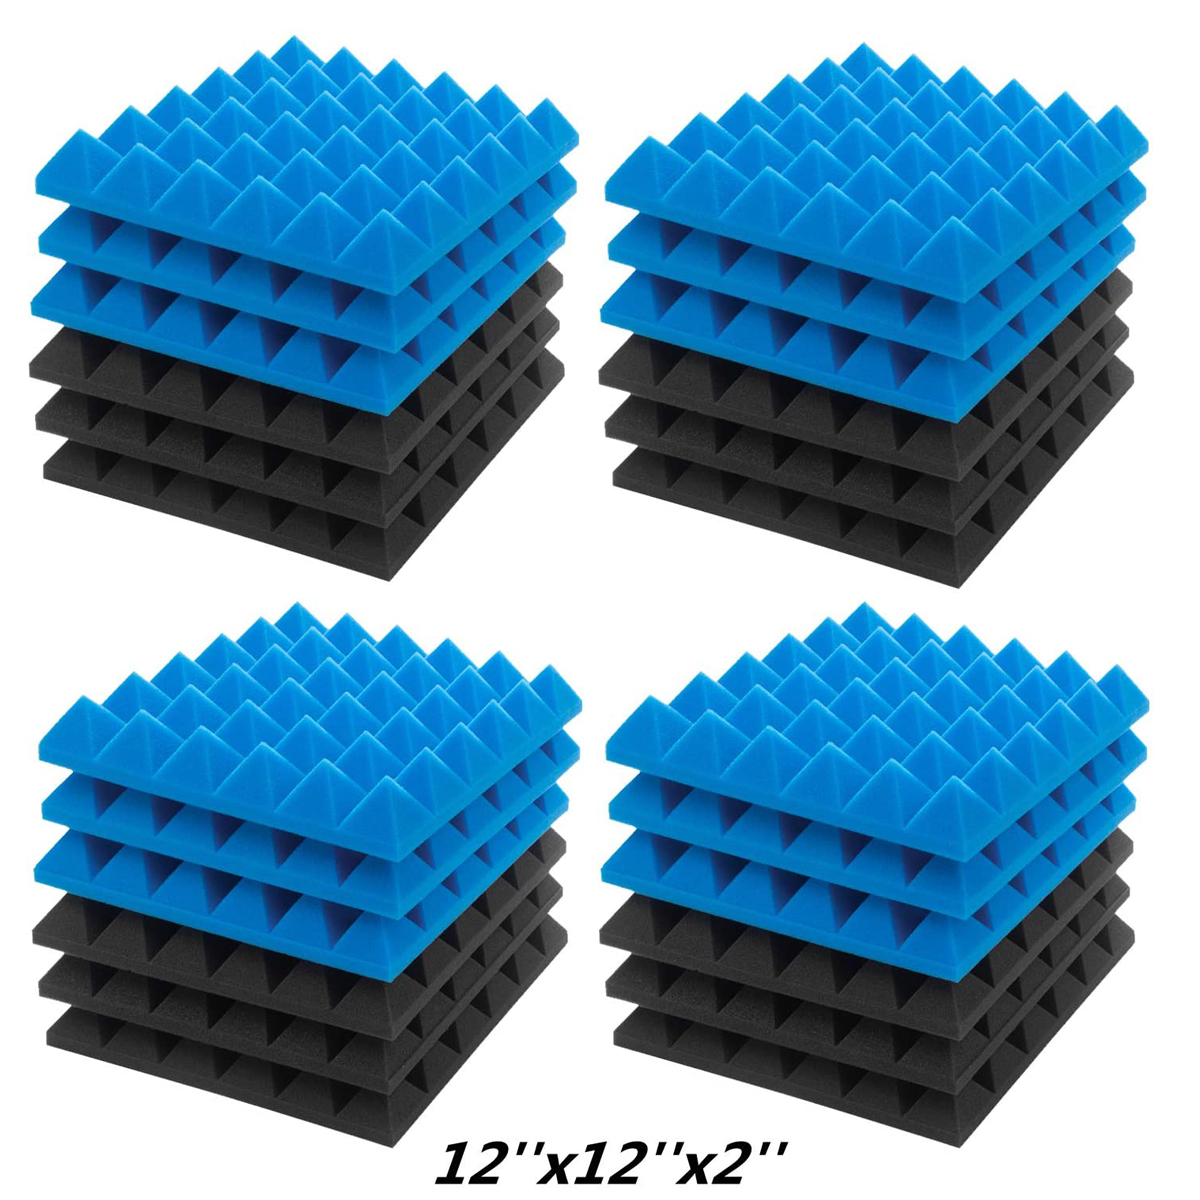 6Pcs-Acoustic-Foams-Studio-Soundproofing-Wedges-Tiles-Black--Blue-12x12x2inch-1749892-9